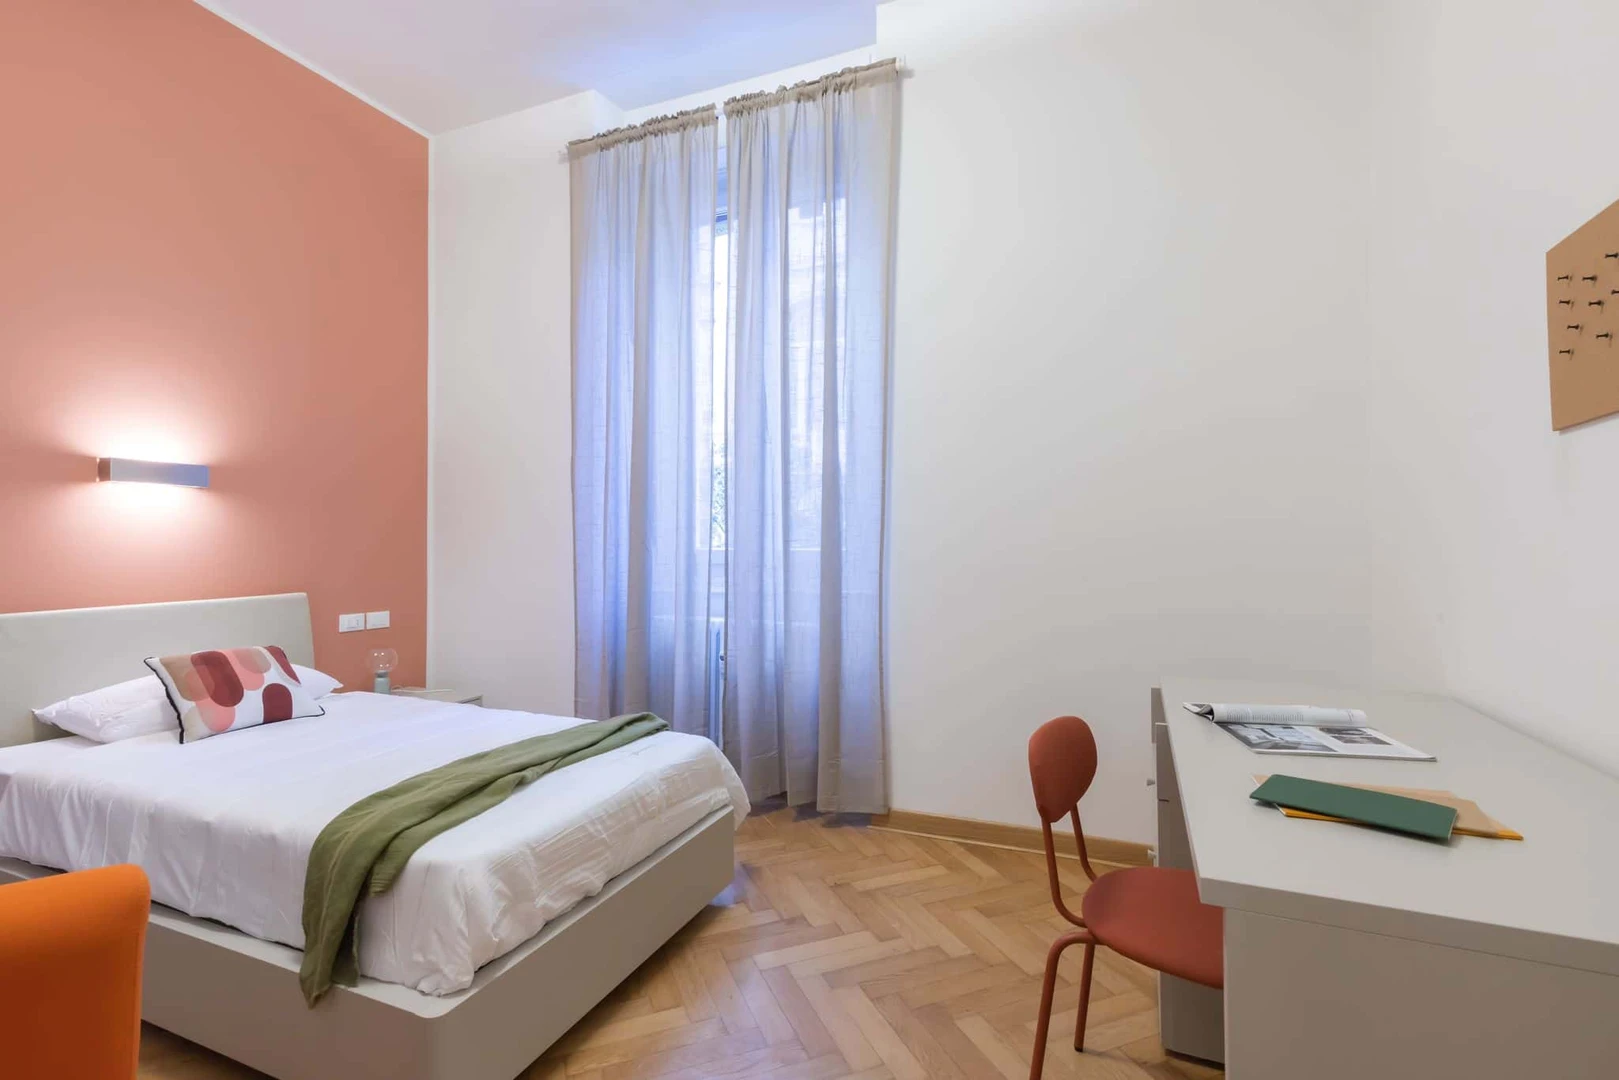 Monatliche Vermietung von Zimmern in Trieste